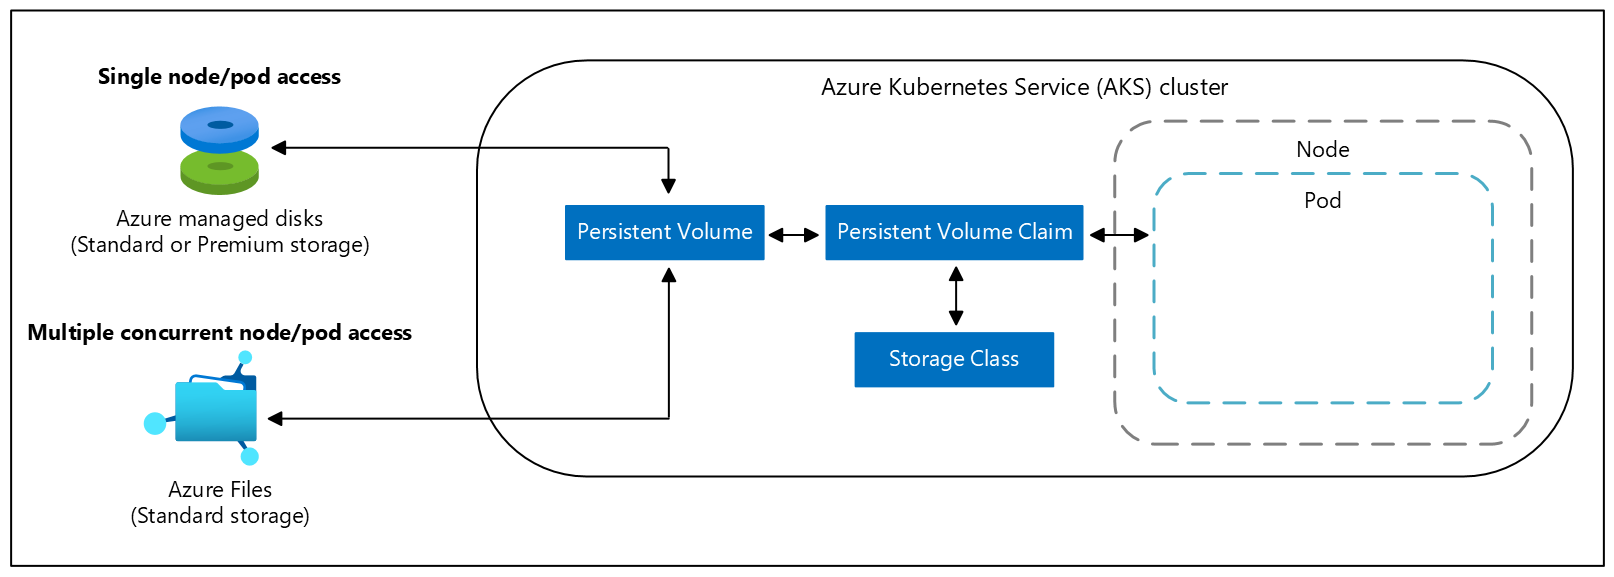 Azure Kubernetes Services (AKS) kümesindeki kalıcı birim talepleri diyagramı.